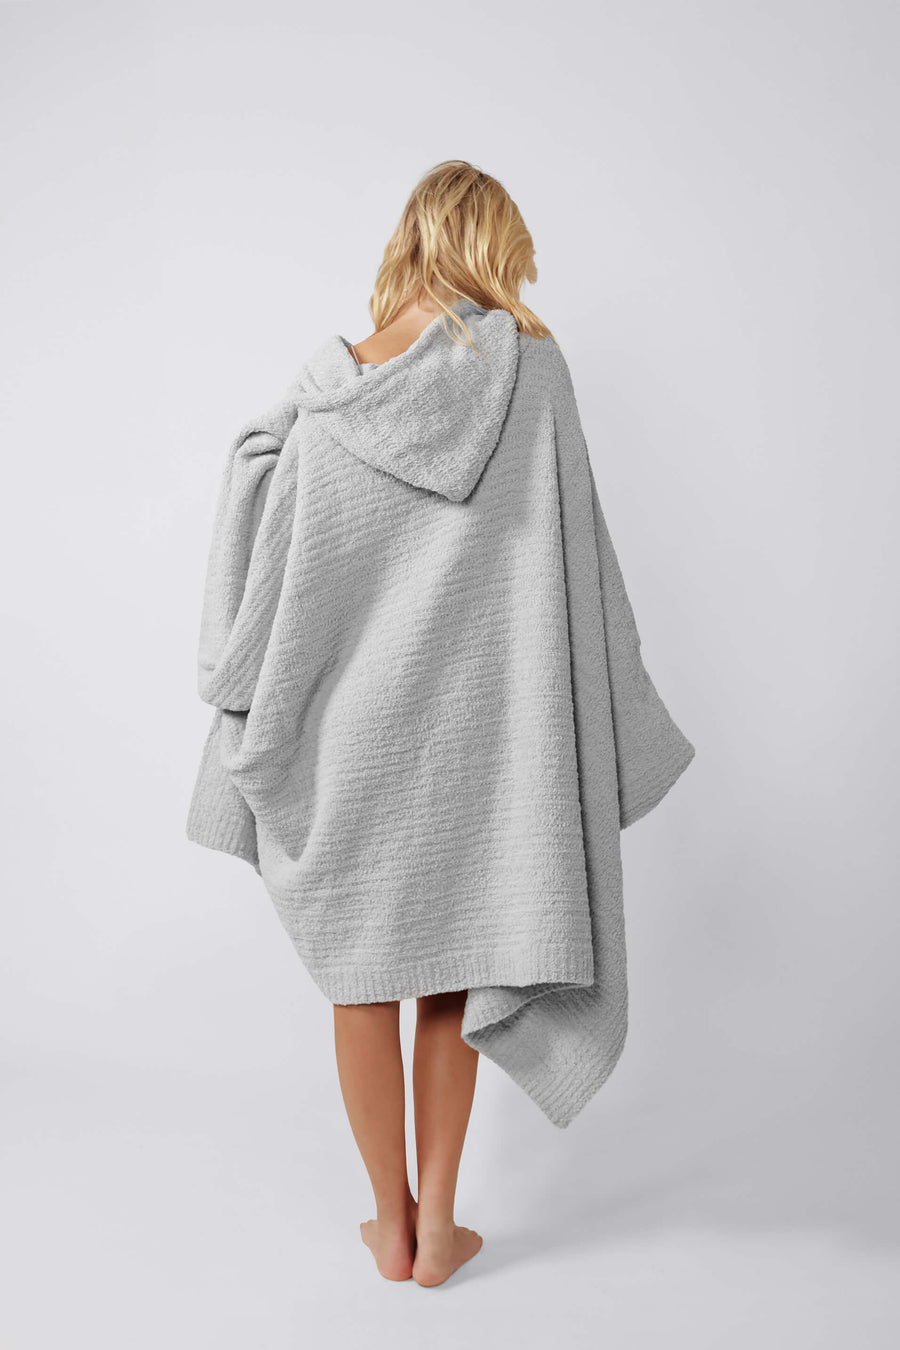 Snug Hooded Wearable Blanket Cloud Gray